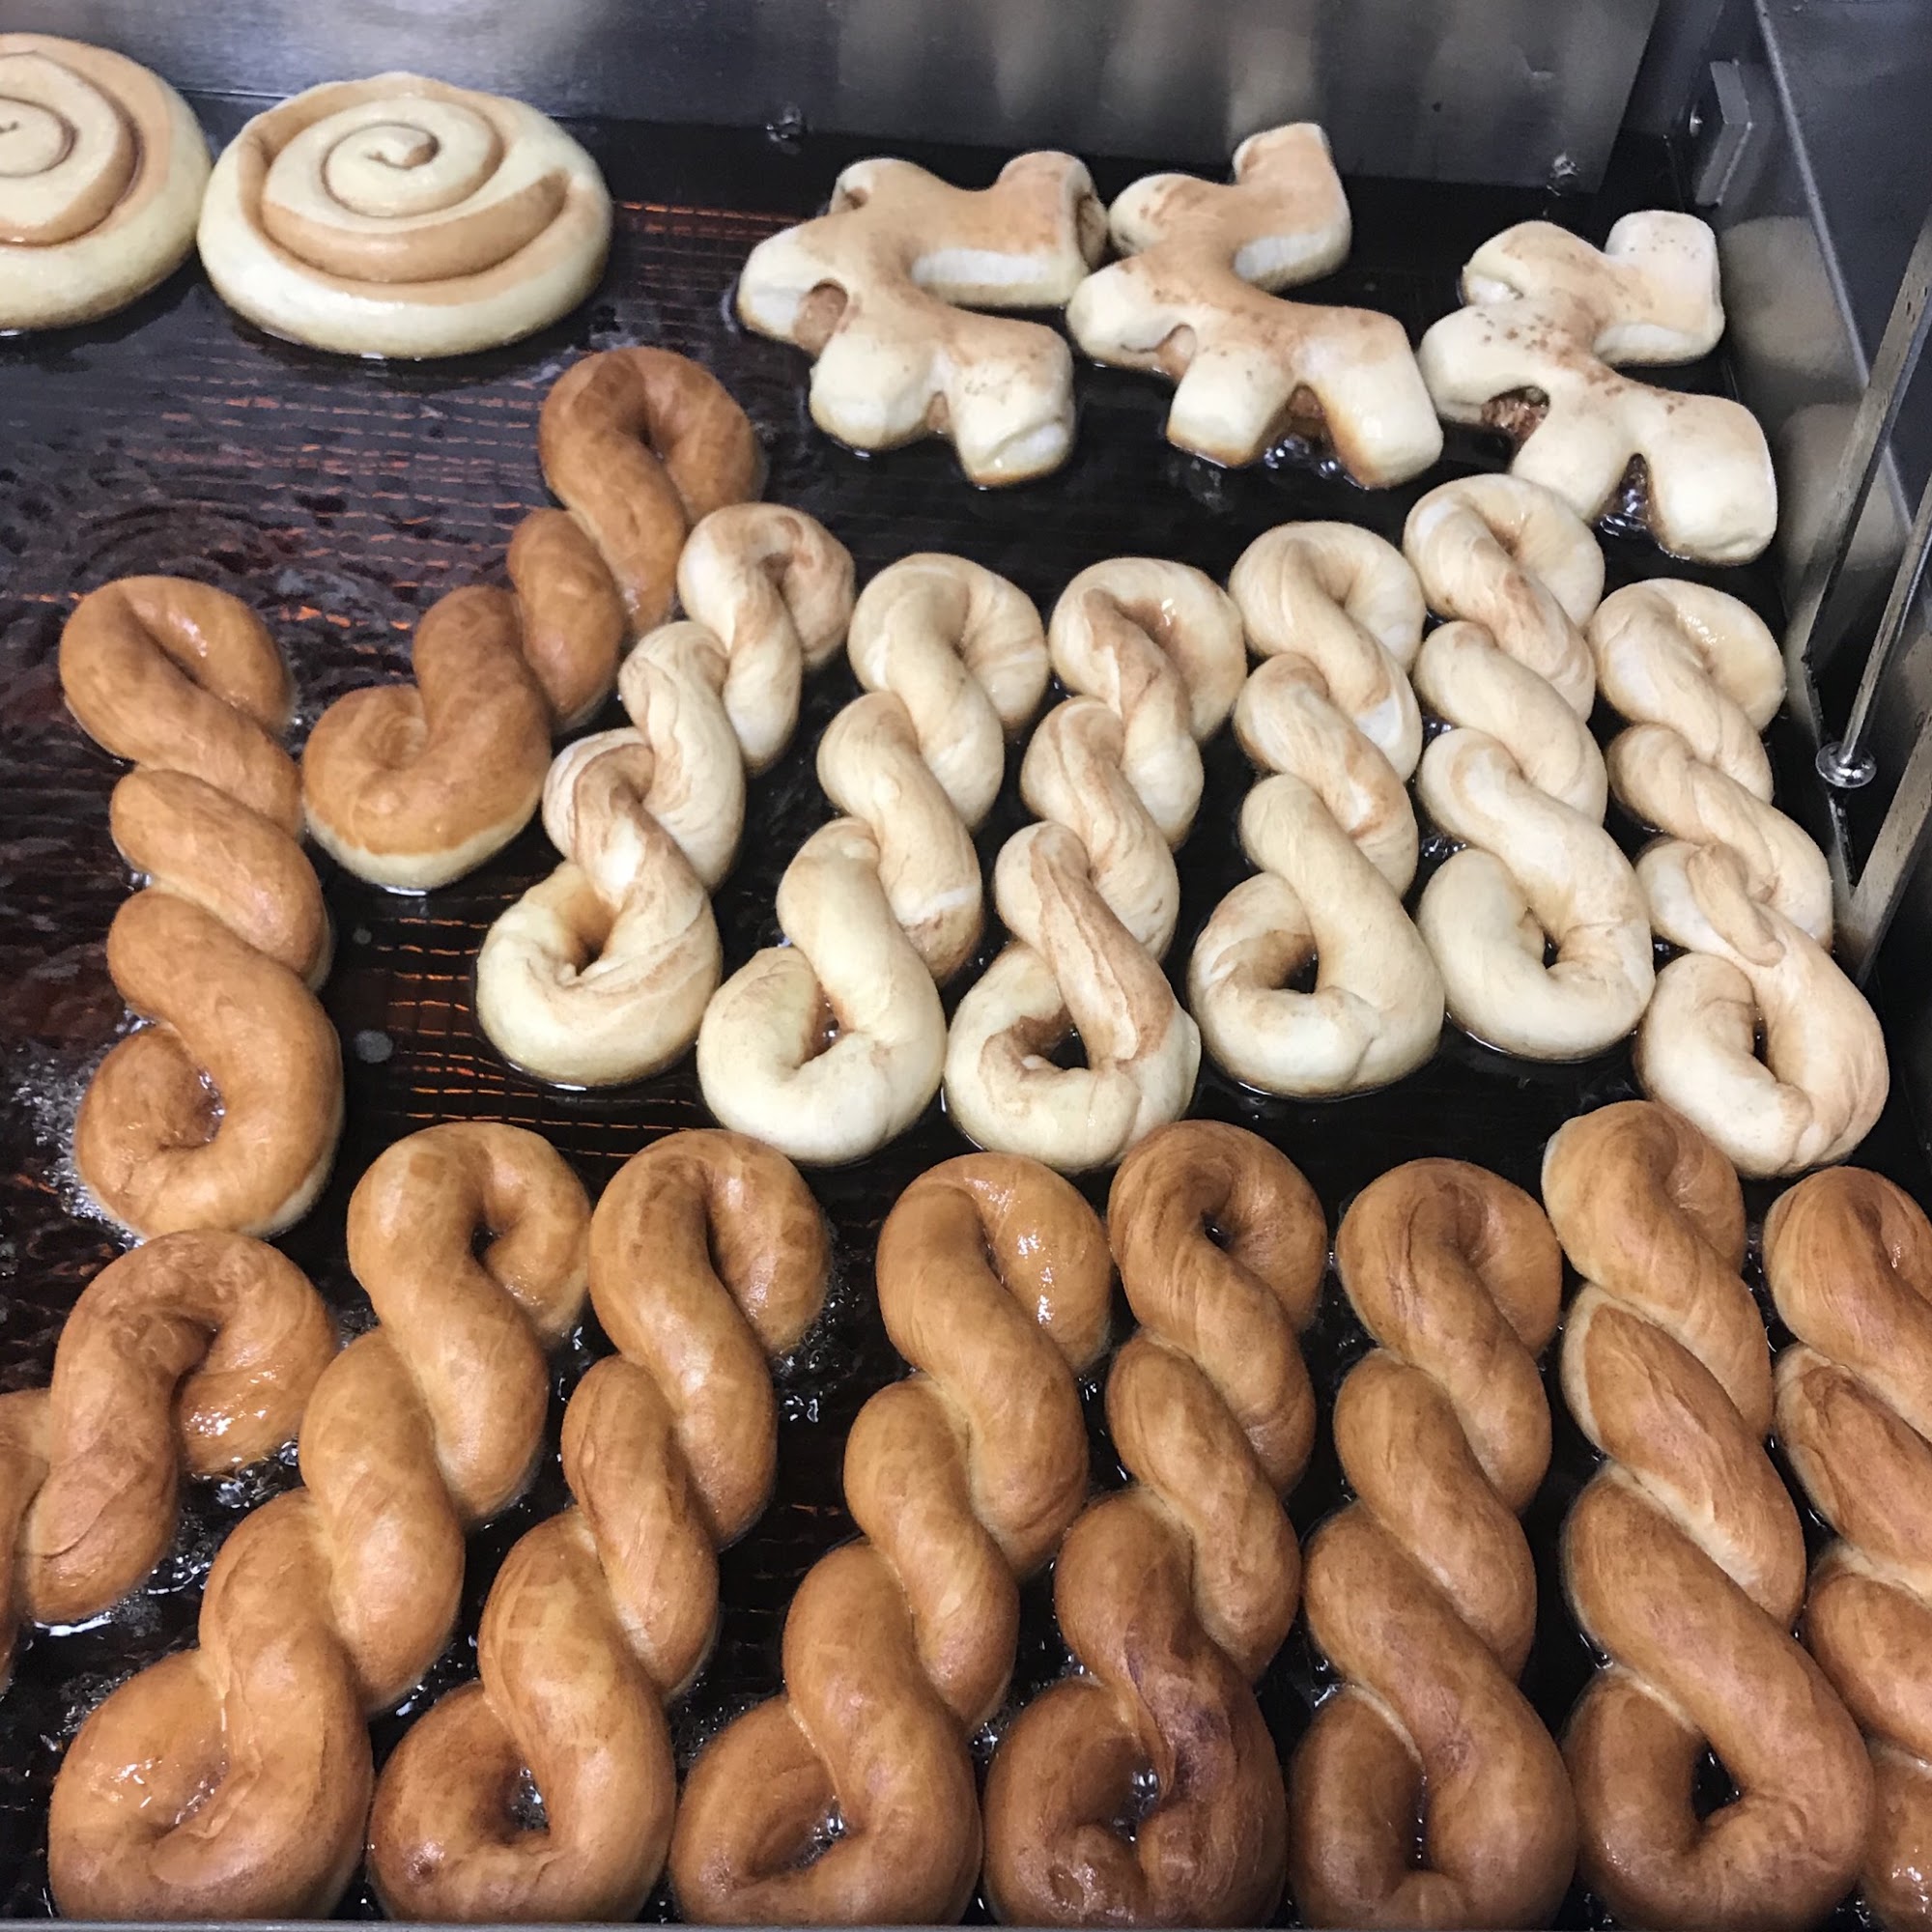 Bestz donuts of Forsythe